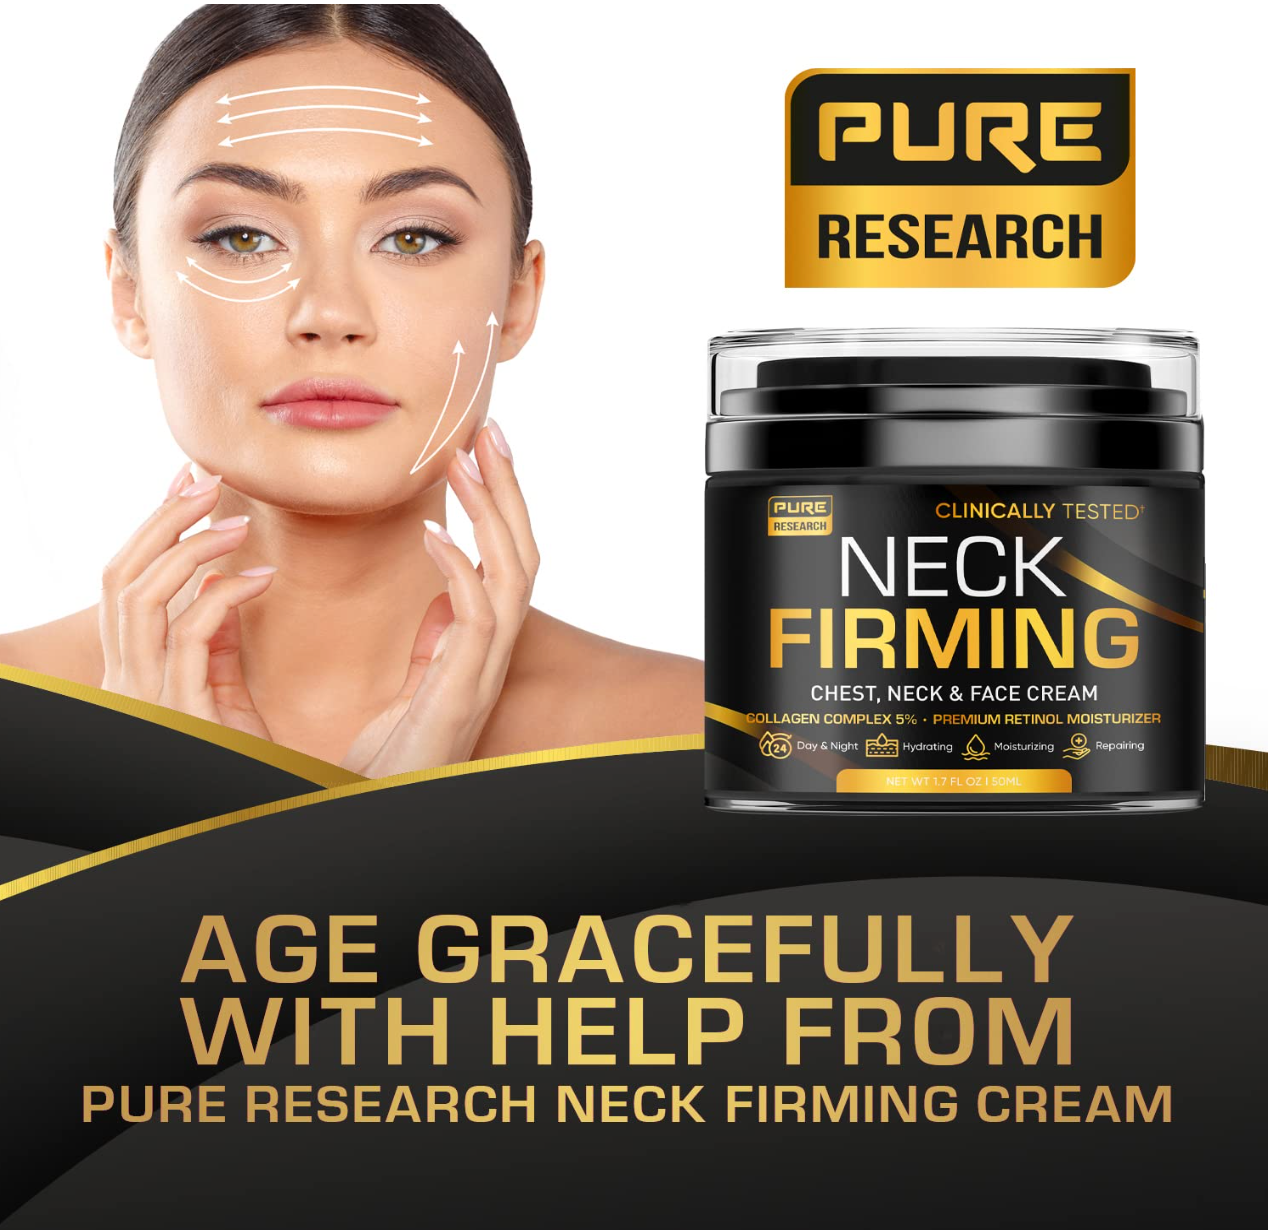 Neck Firming Cream - Anti Wrinkle Cream – Use on Saggy or Turkey Neck, Tightener - Collagen & Retinol Skin Tightening Cream - Anti Aging Moisturizer for Neck & Décolleté